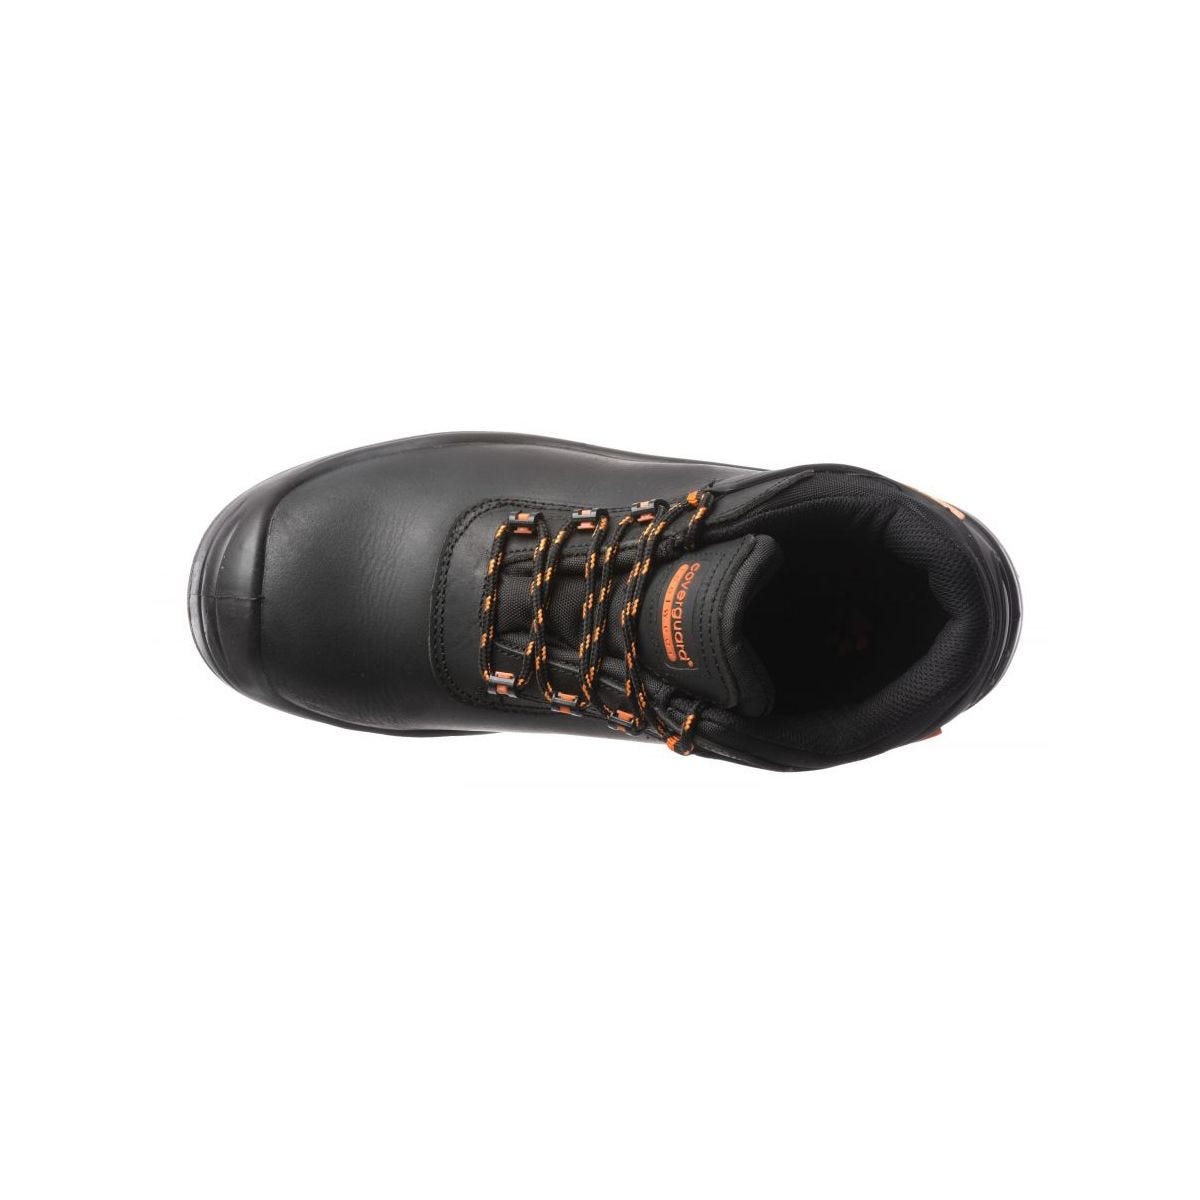 Chaussures de sécurité basses S3 SRC OPAL composite Noir - Coverguard - Taille 42 2